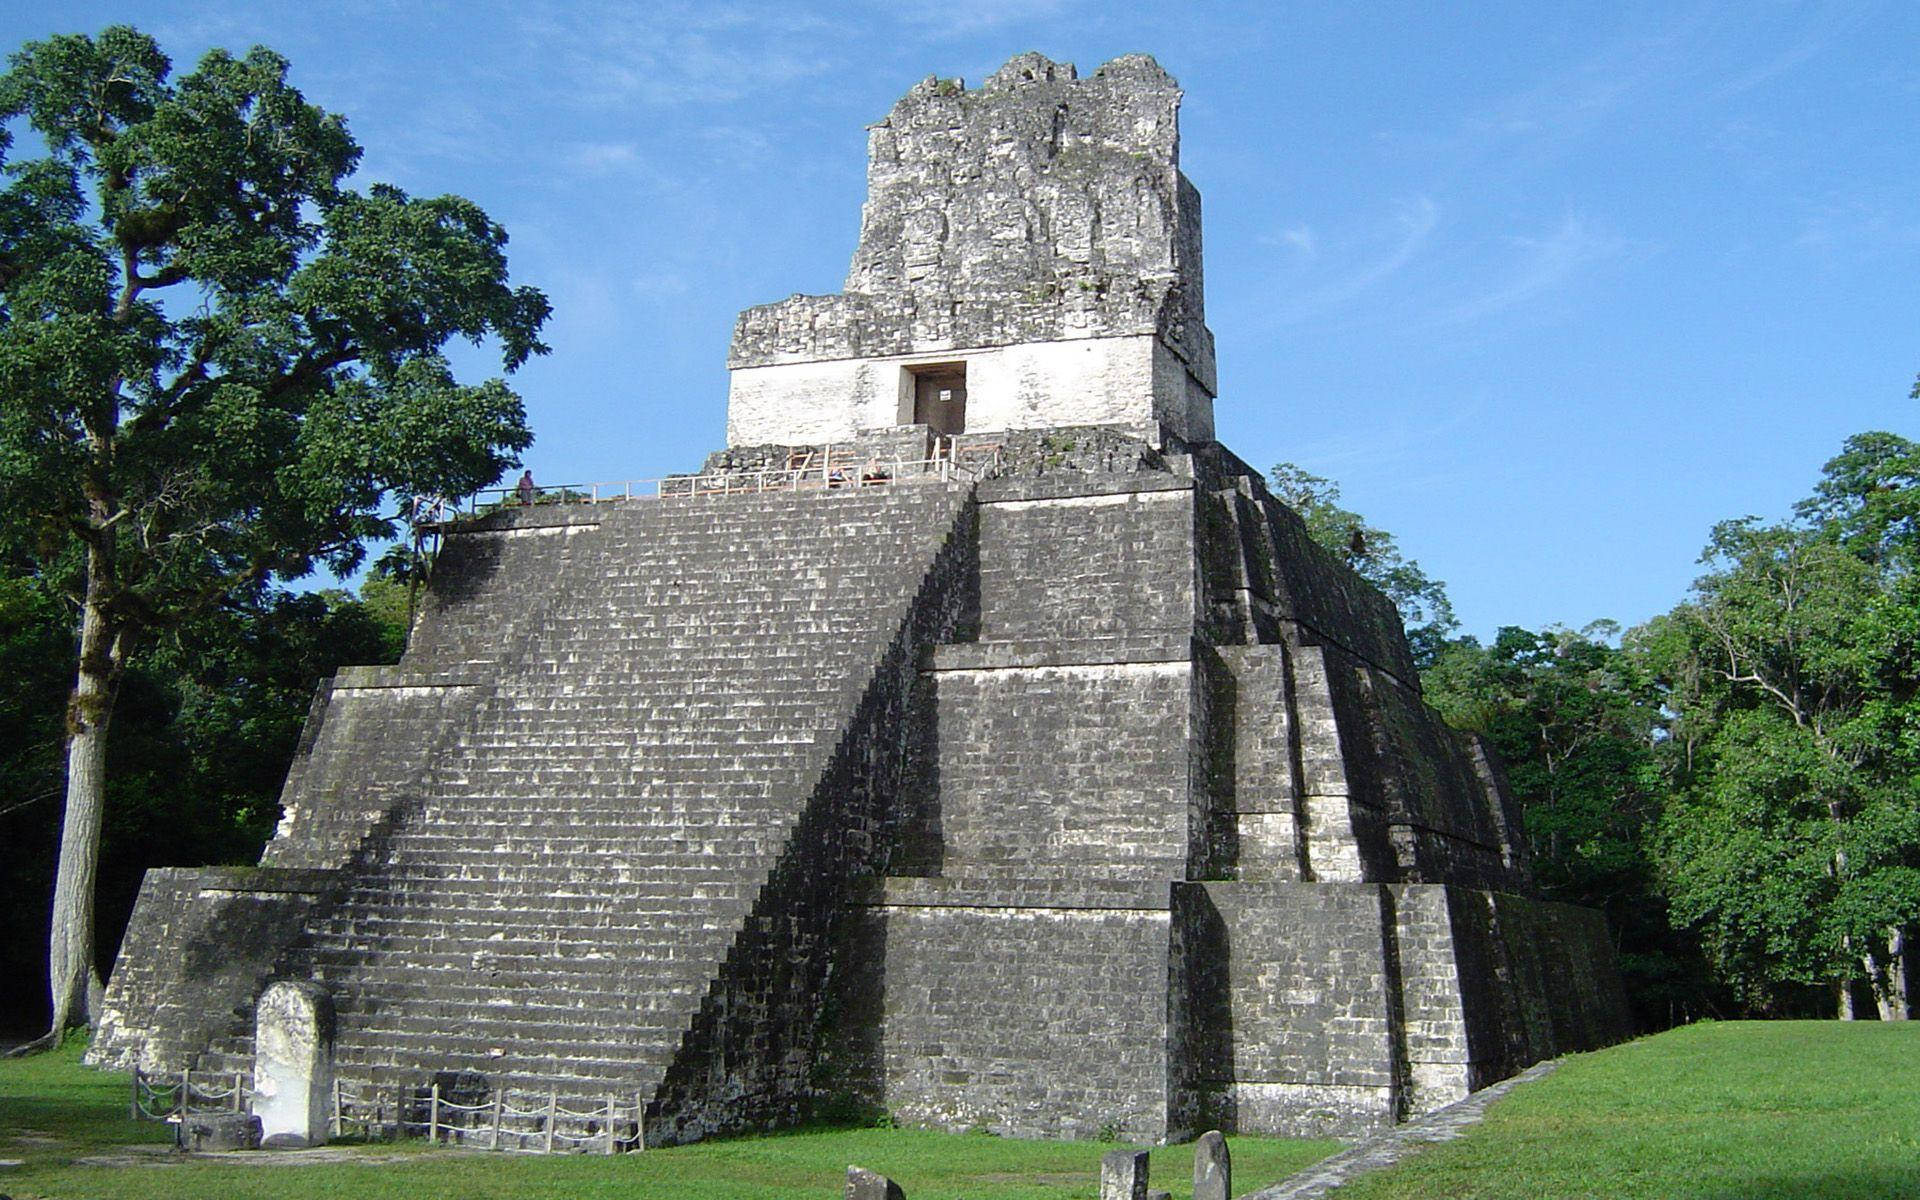 [100+] Fondos de fotos de Tikal | Wallpapers.com